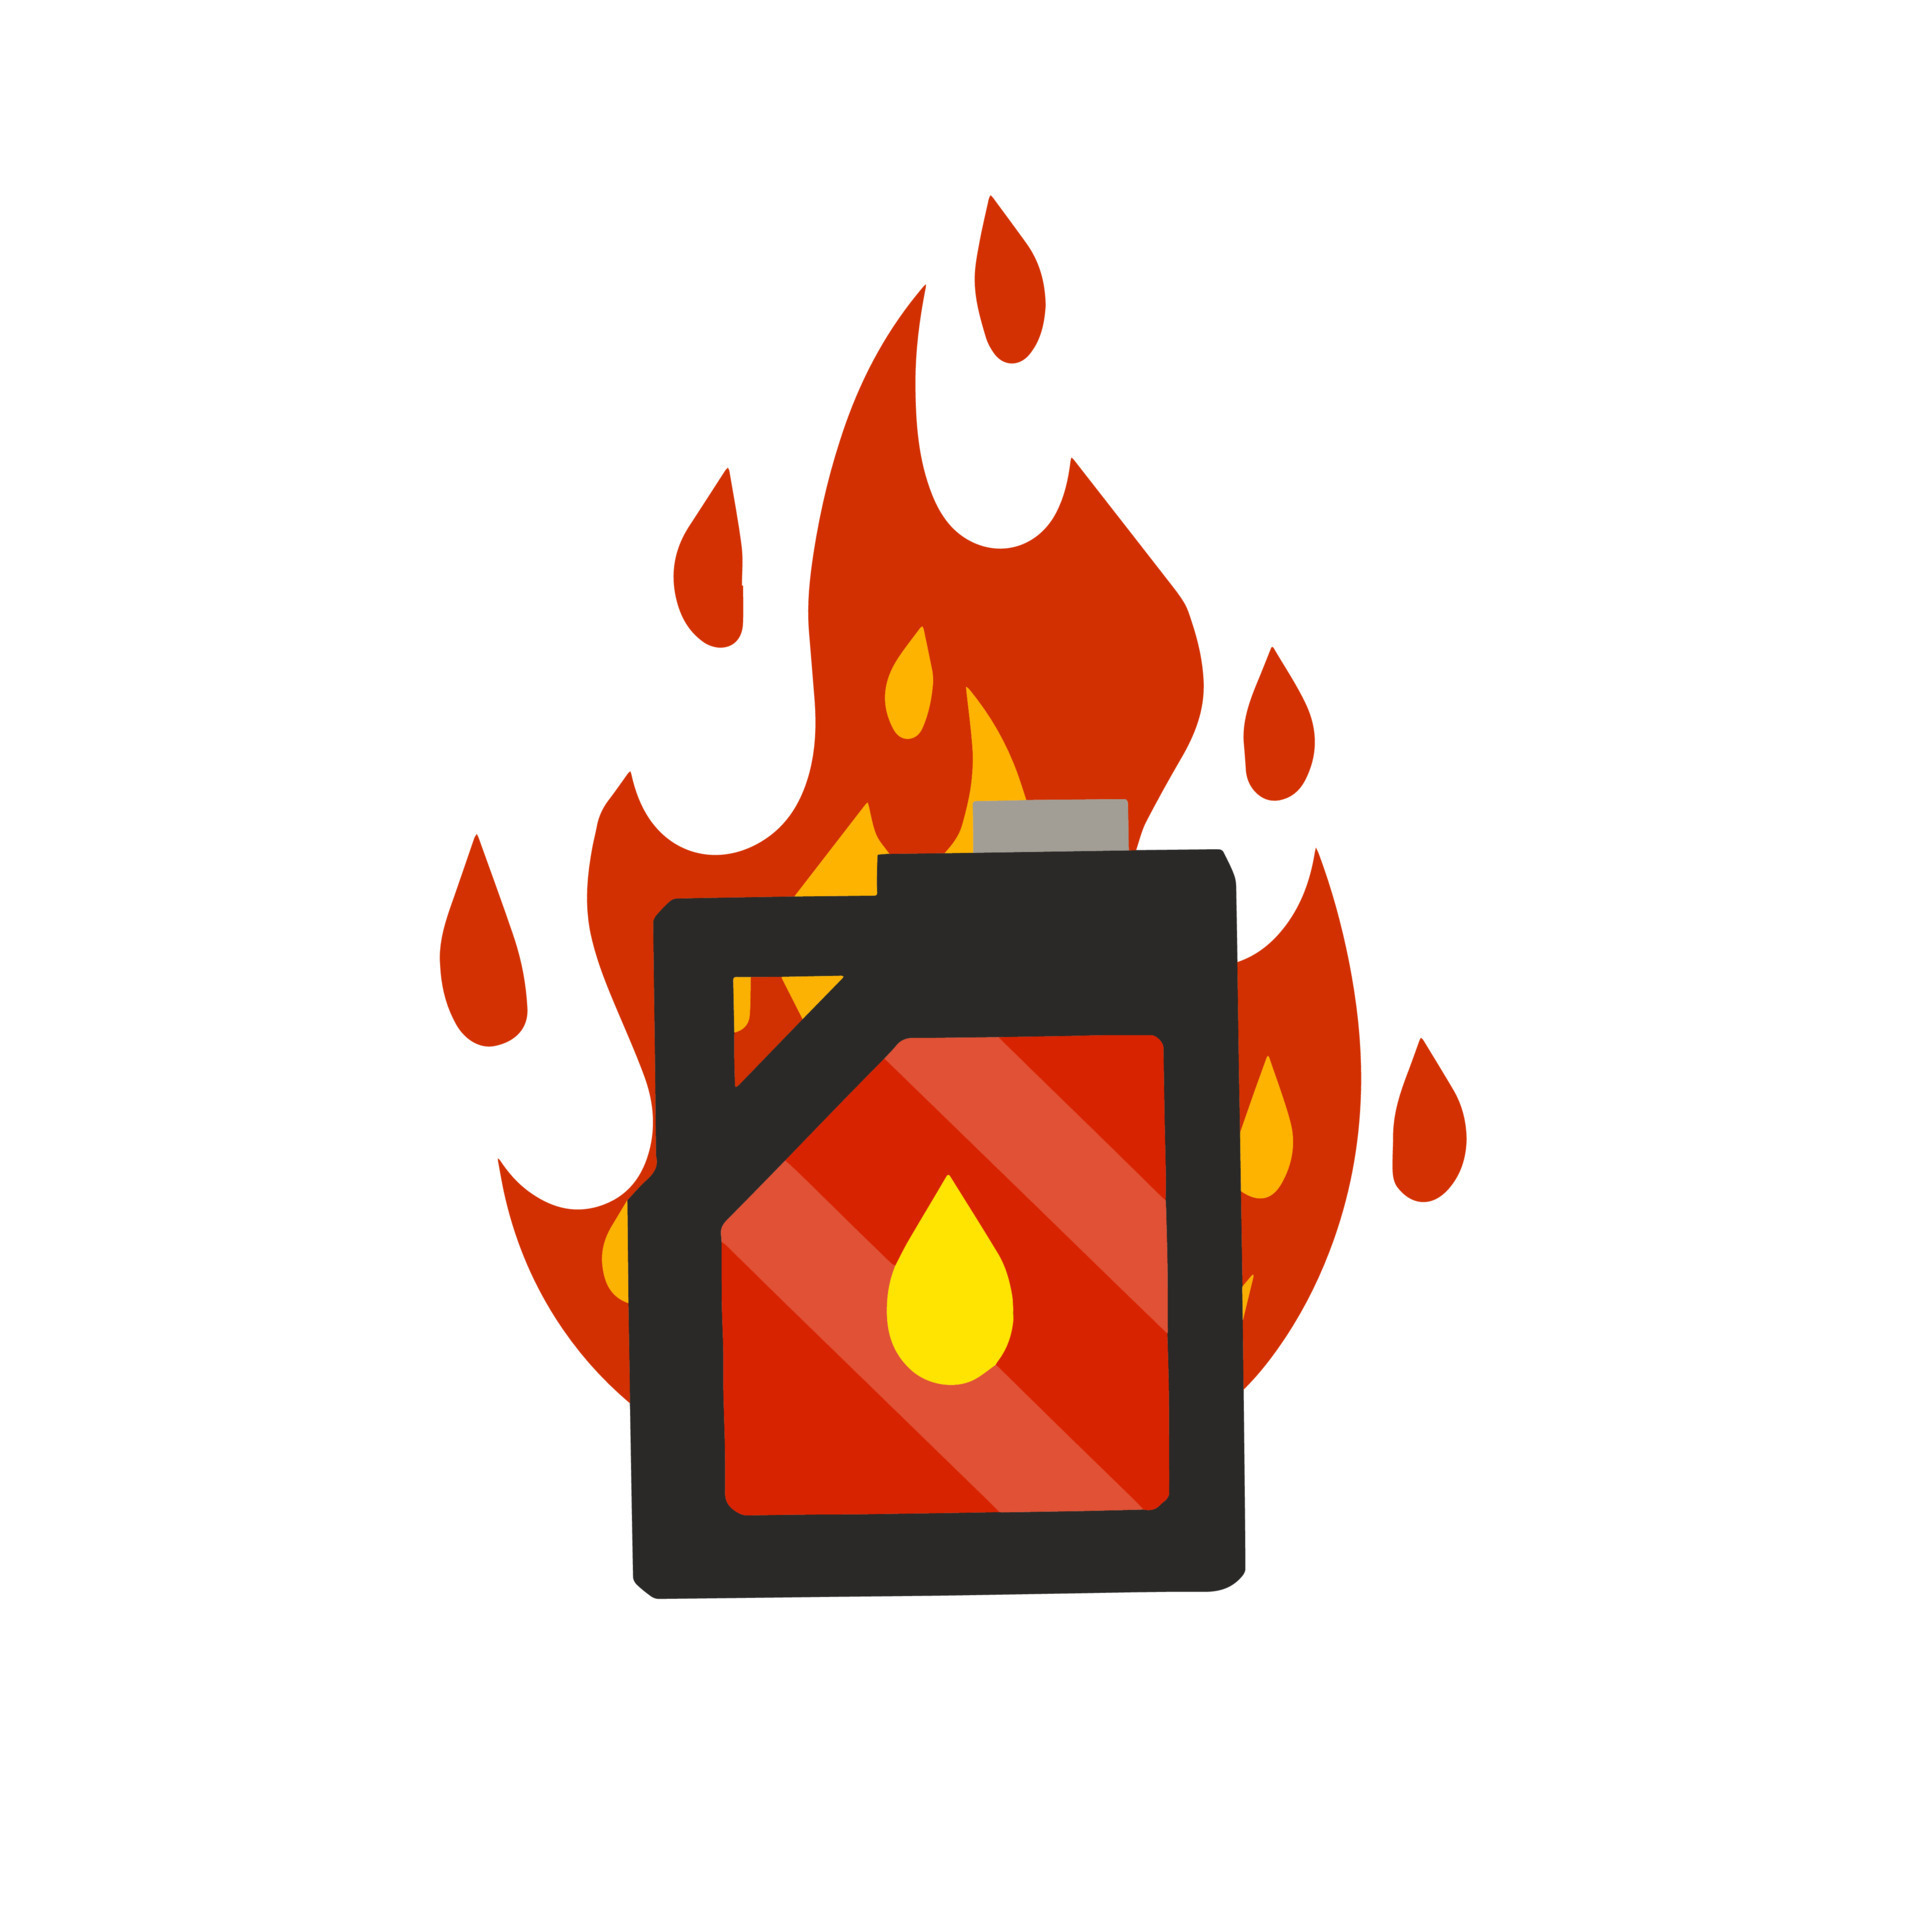 https://static.vecteezy.com/ti/gratis-vektor/p3/23162635-kanister-mit-kraftstoff-container-mit-ol-brennbar-objekt-achtung-und-feuer-gefahrlich-flammen-eben-karikatur-symbol-illustration-isoliert-auf-weiss-hintergrund-rot-gas-panzer-vektor.jpg